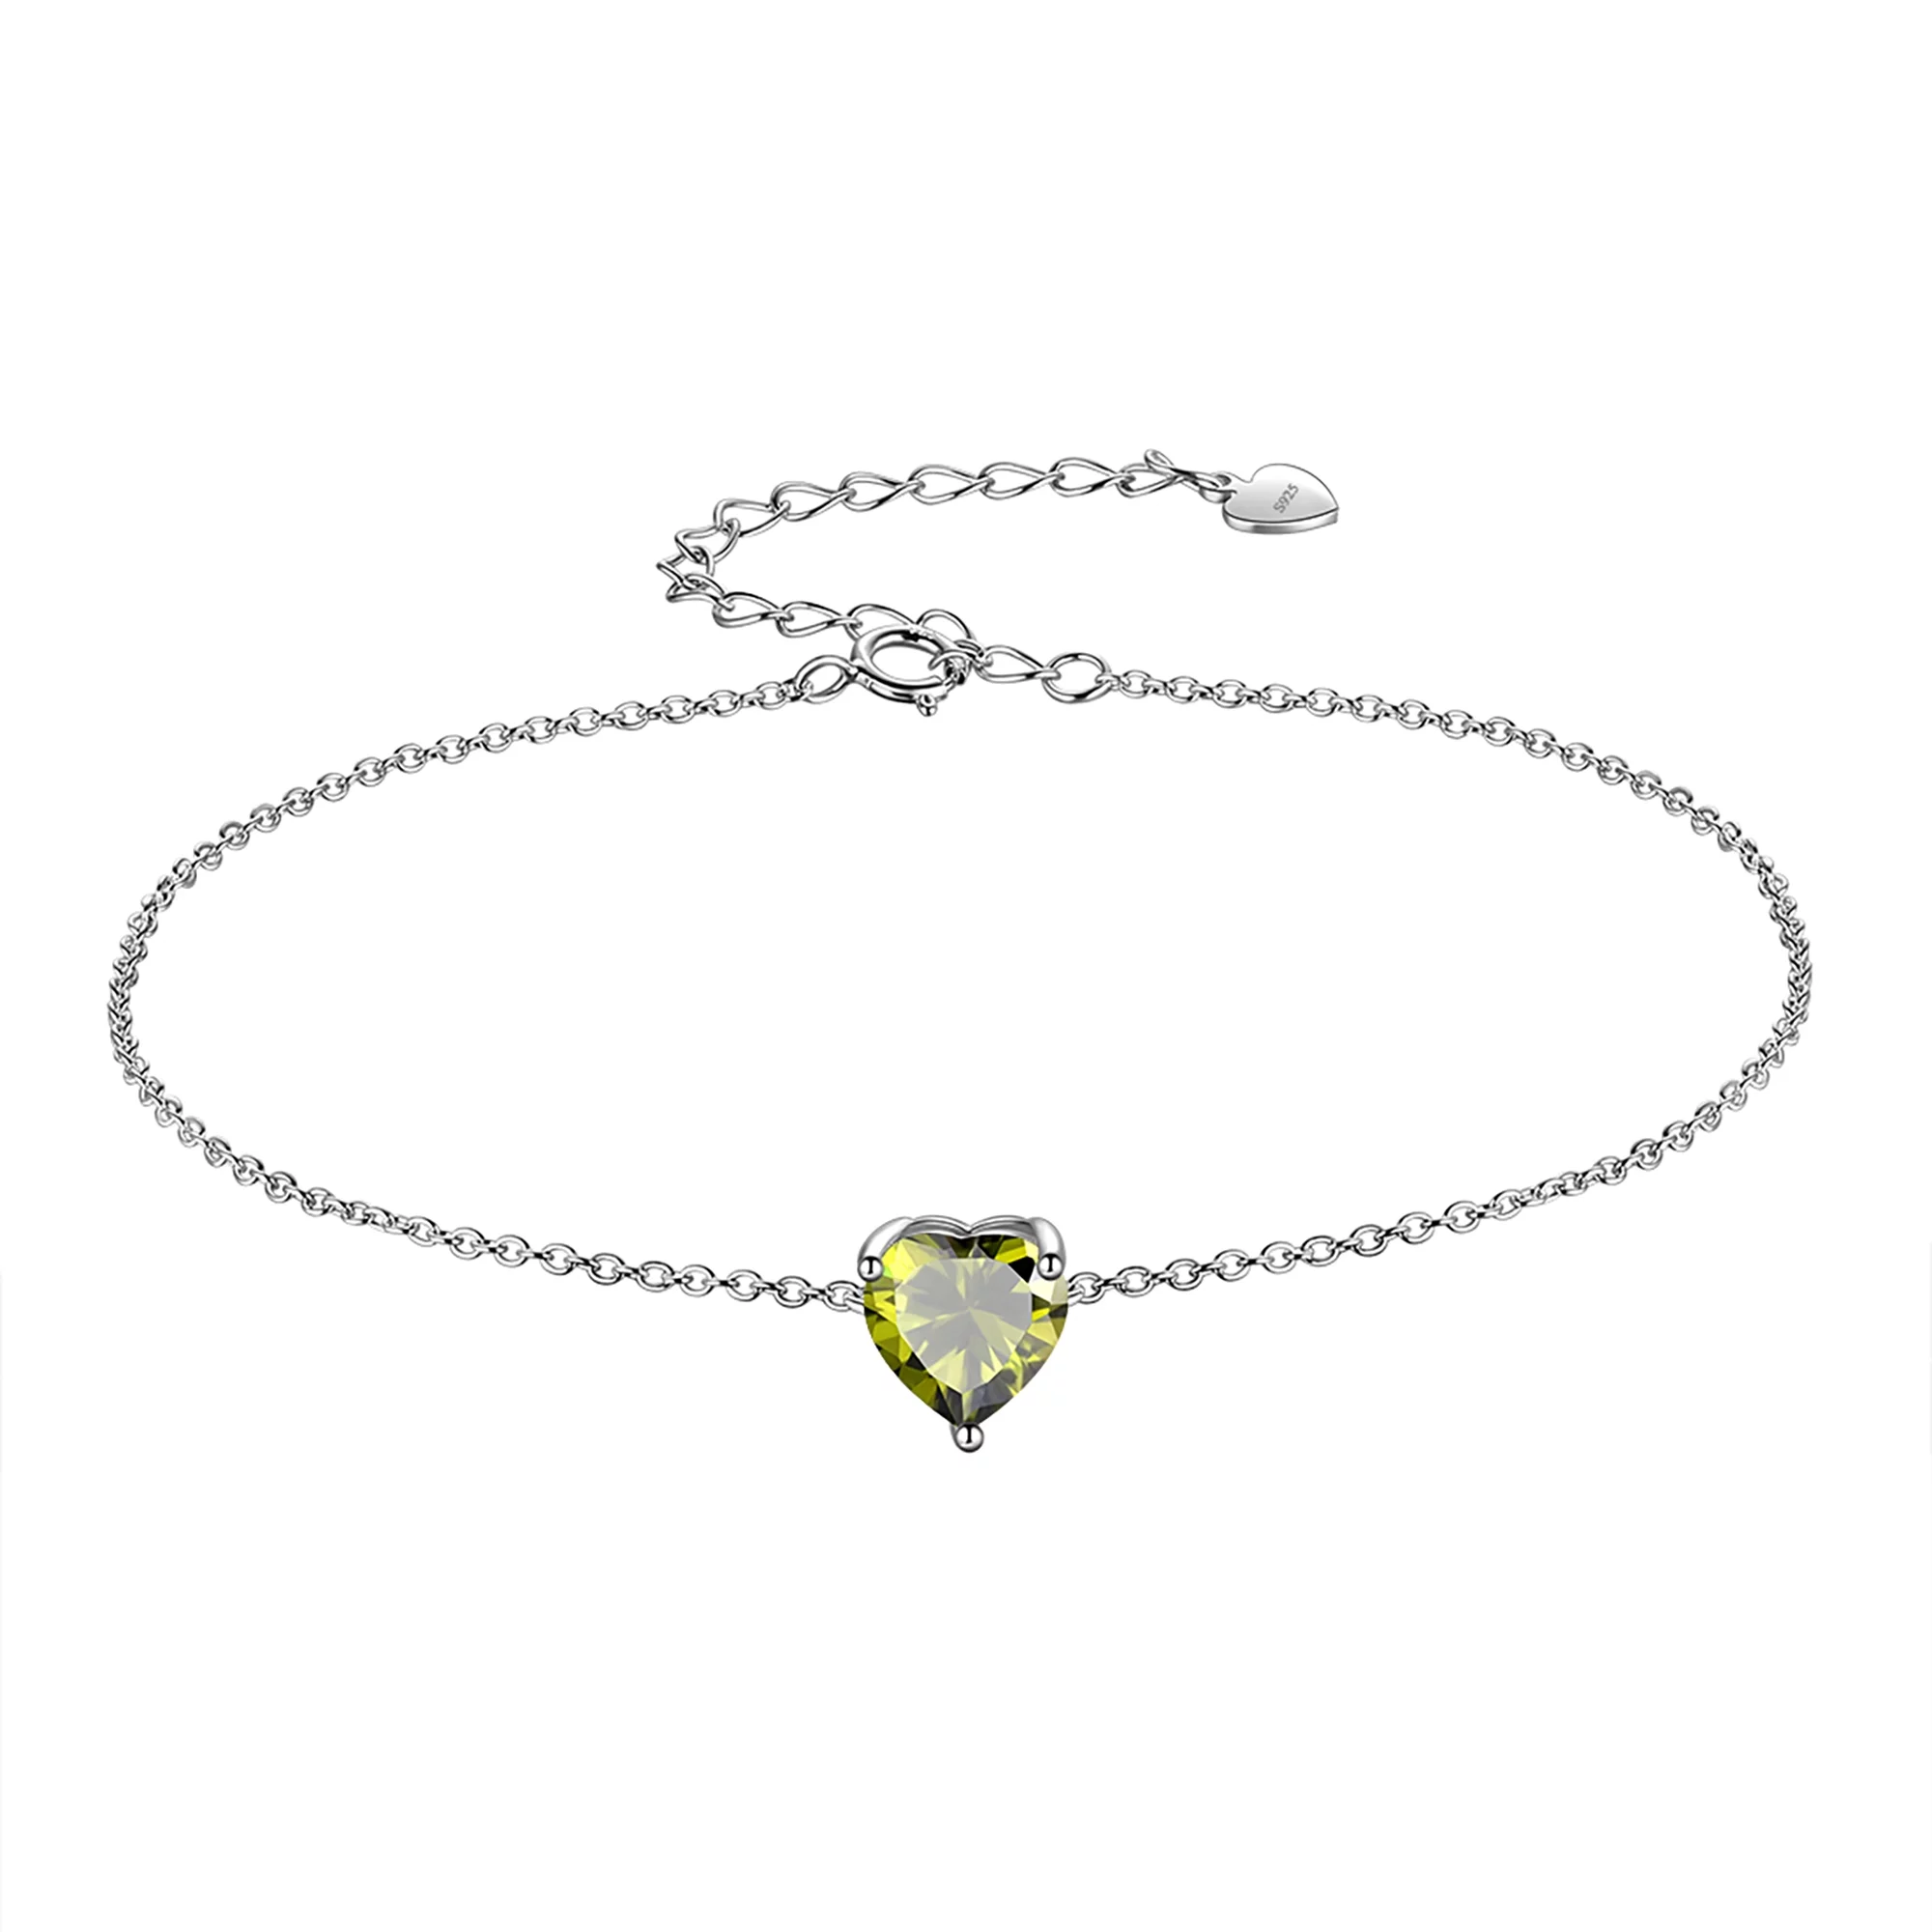 Beautlace 925 Sterling Silver Heart Charm Bracelet,Adjustable Birthstone Bracelet for Women,7.5" + 2" Extender